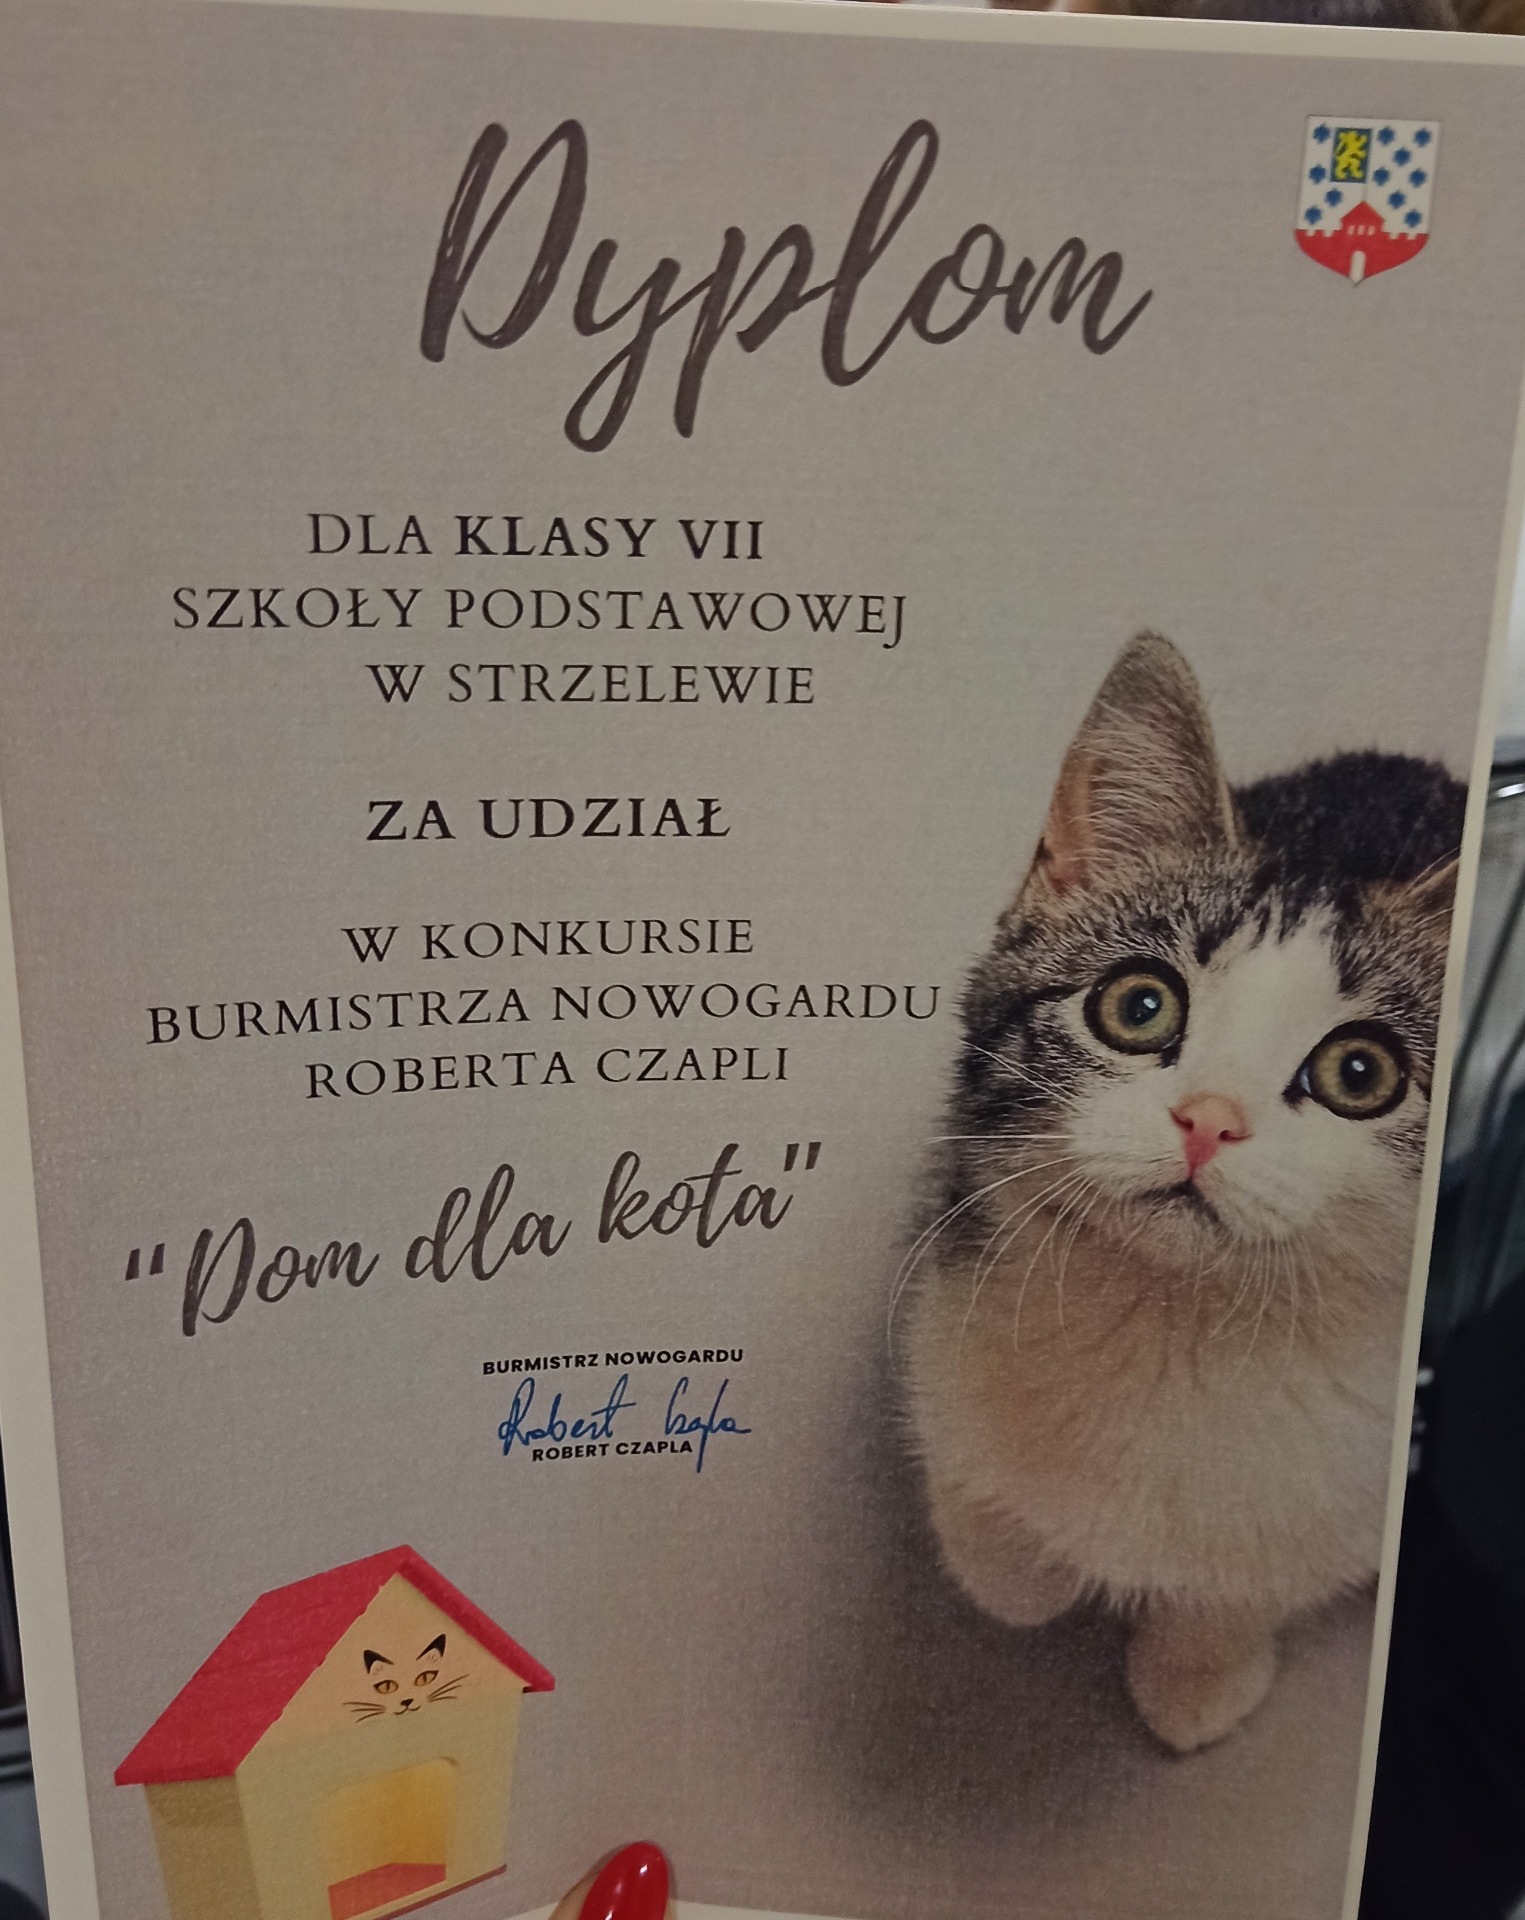 Konkurs organizowany przez Burmistrza Nowogardu Roberta Czaplę "Domek dla kota." - Obrazek 1